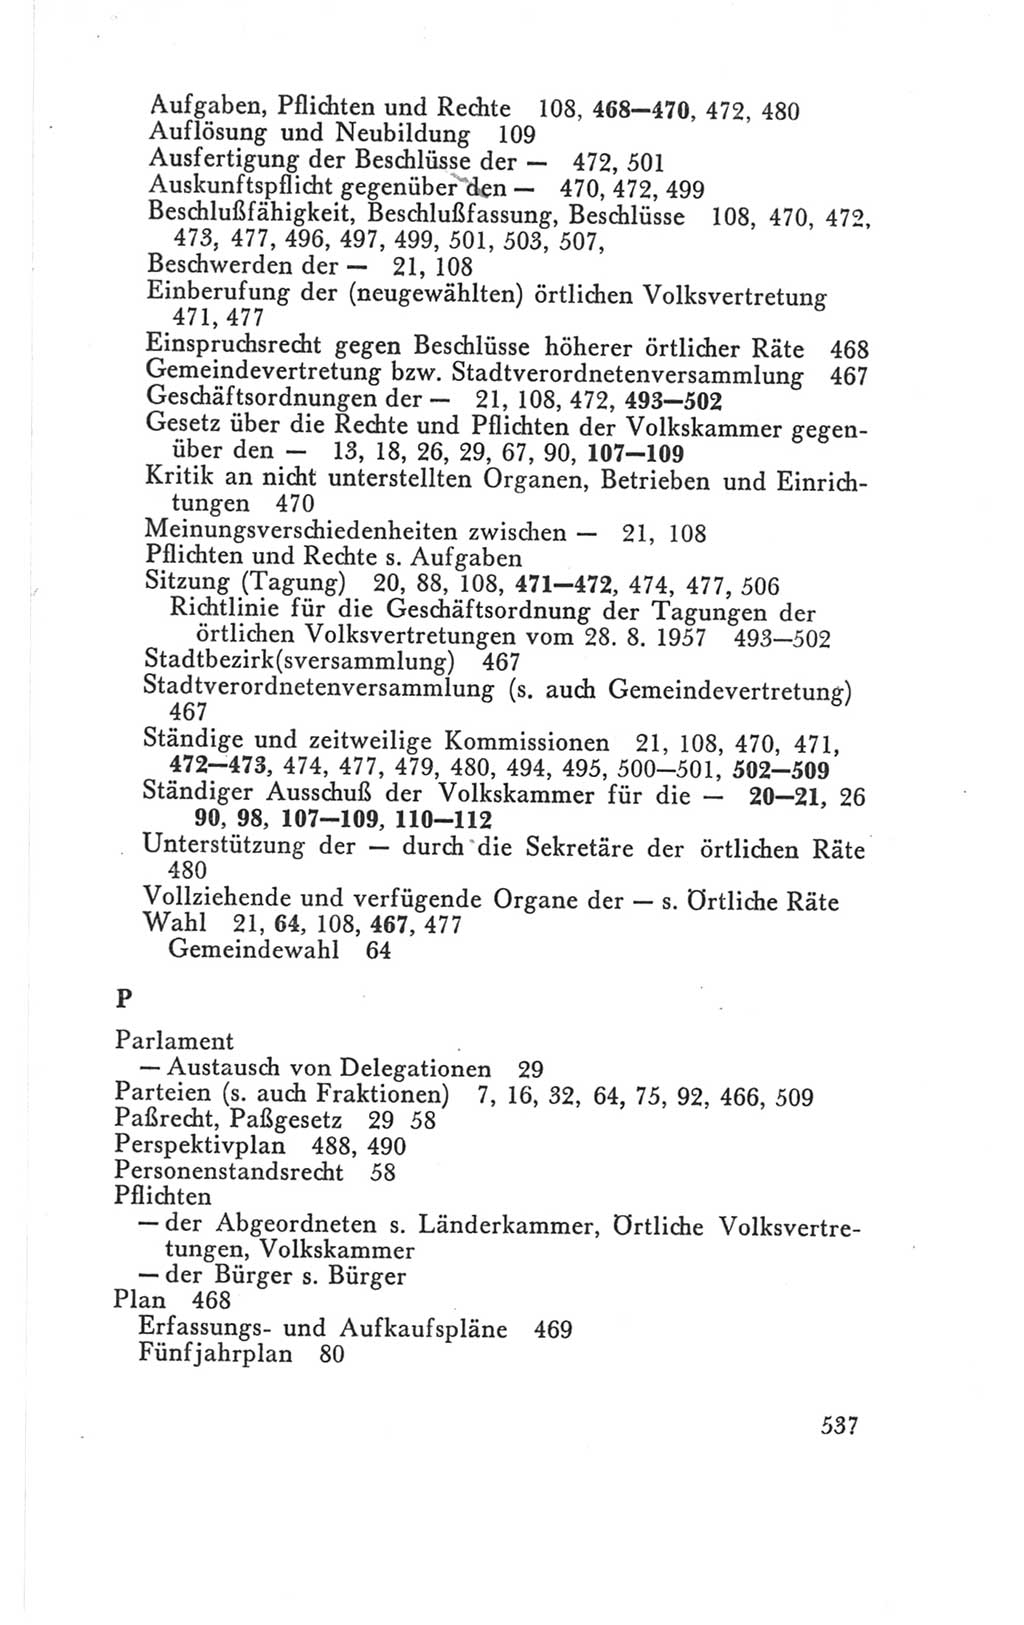 Handbuch der Volkskammer (VK) der Deutschen Demokratischen Republik (DDR), 3. Wahlperiode 1958-1963, Seite 537 (Hdb. VK. DDR 3. WP. 1958-1963, S. 537)